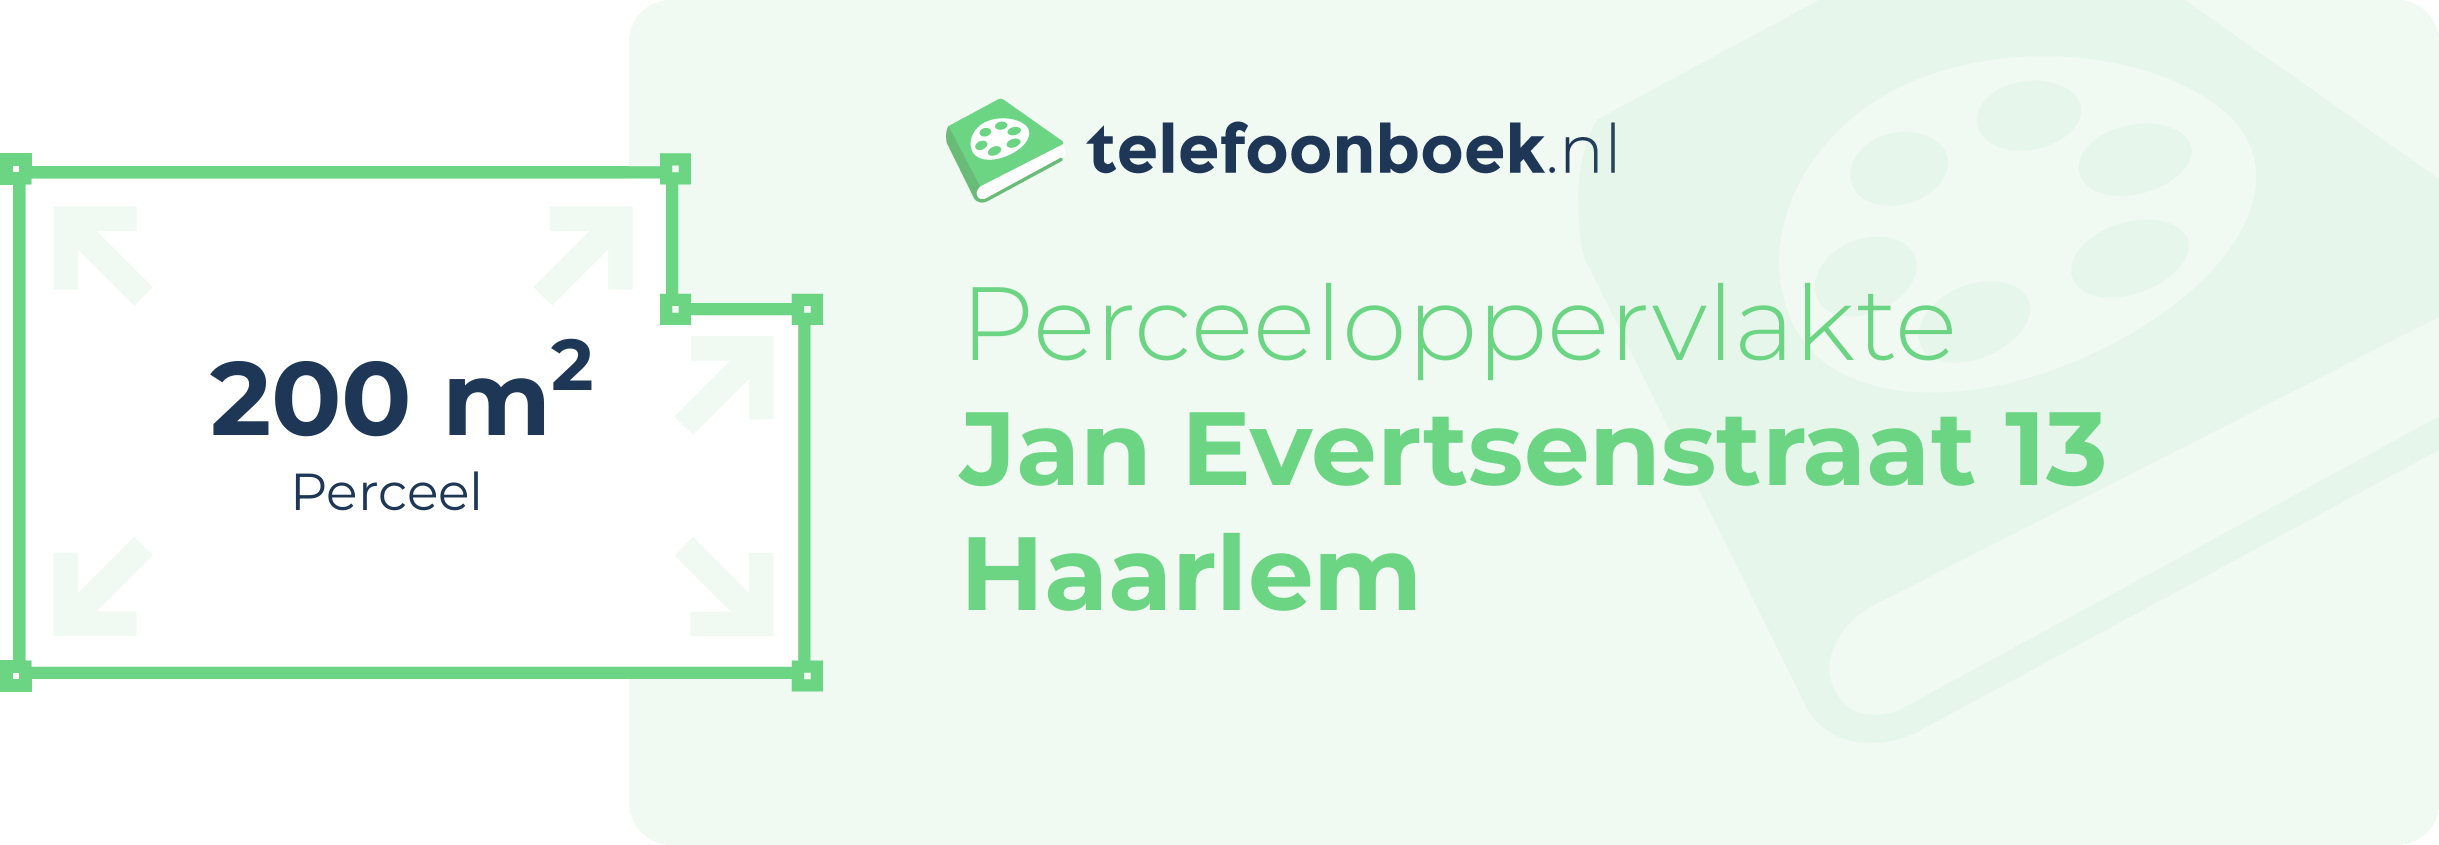 Perceeloppervlakte Jan Evertsenstraat 13 Haarlem